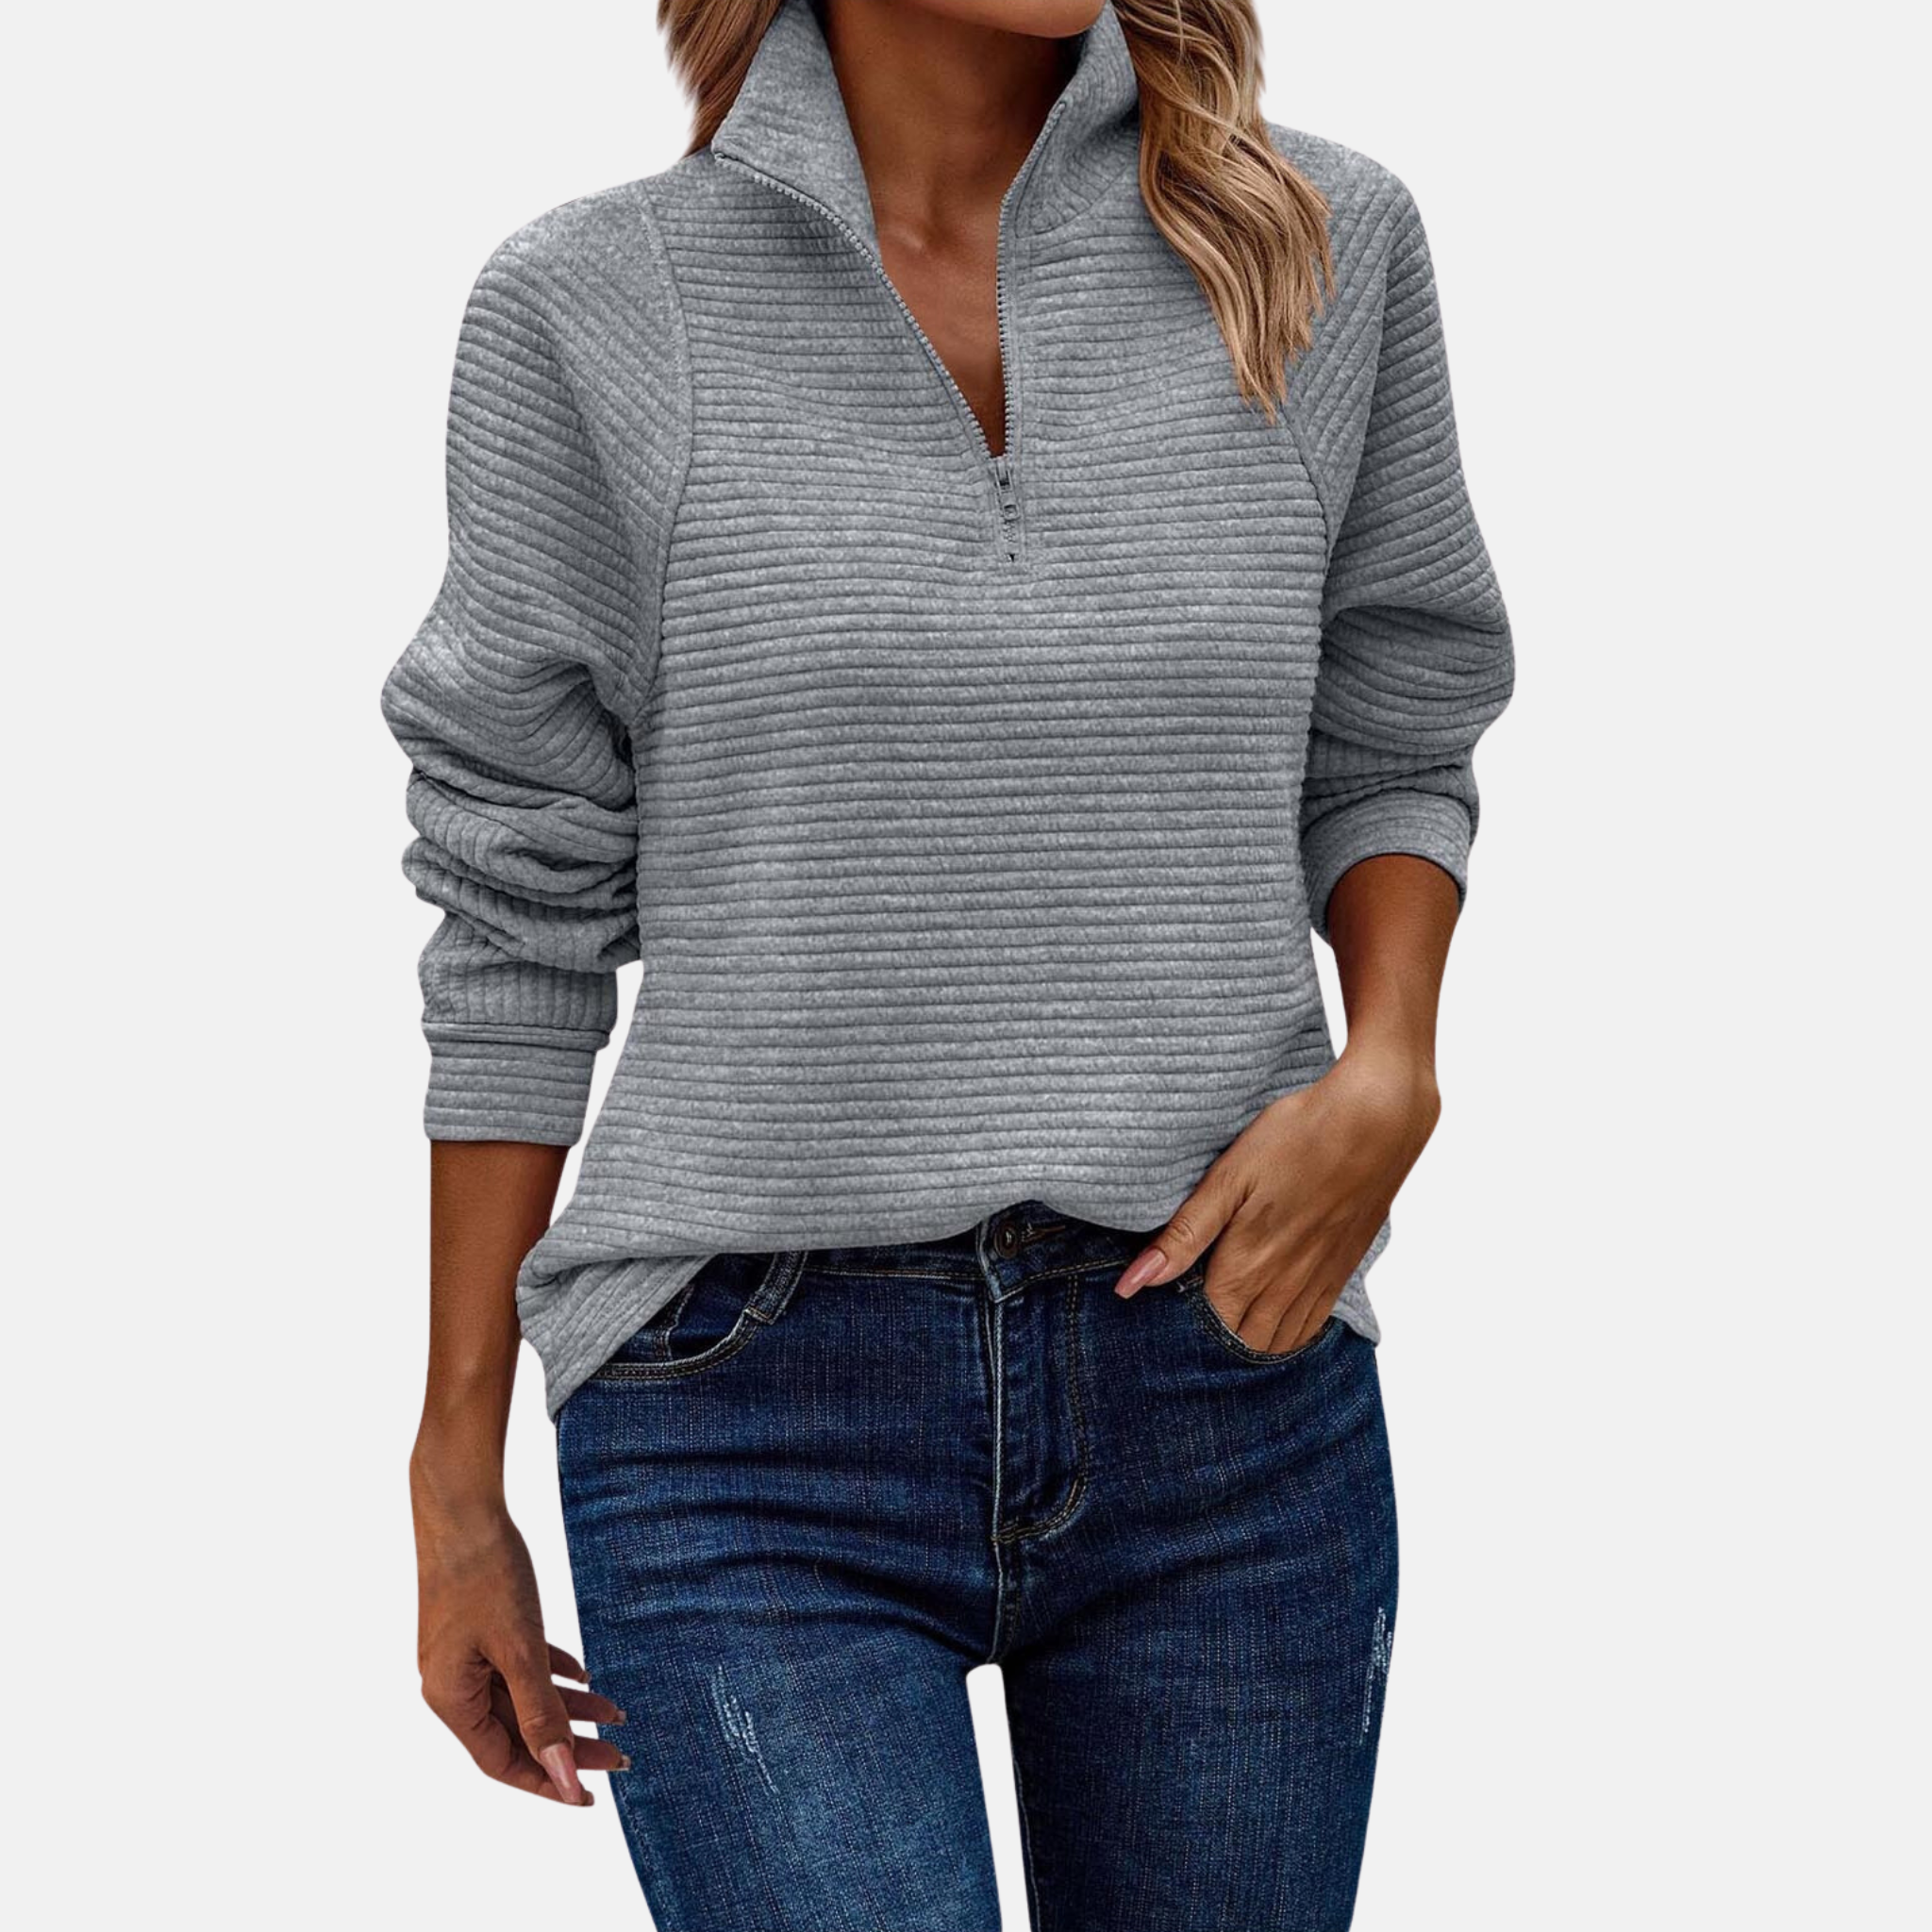 LAURA - Damen Zip-Pullover im Rippstrick-Design